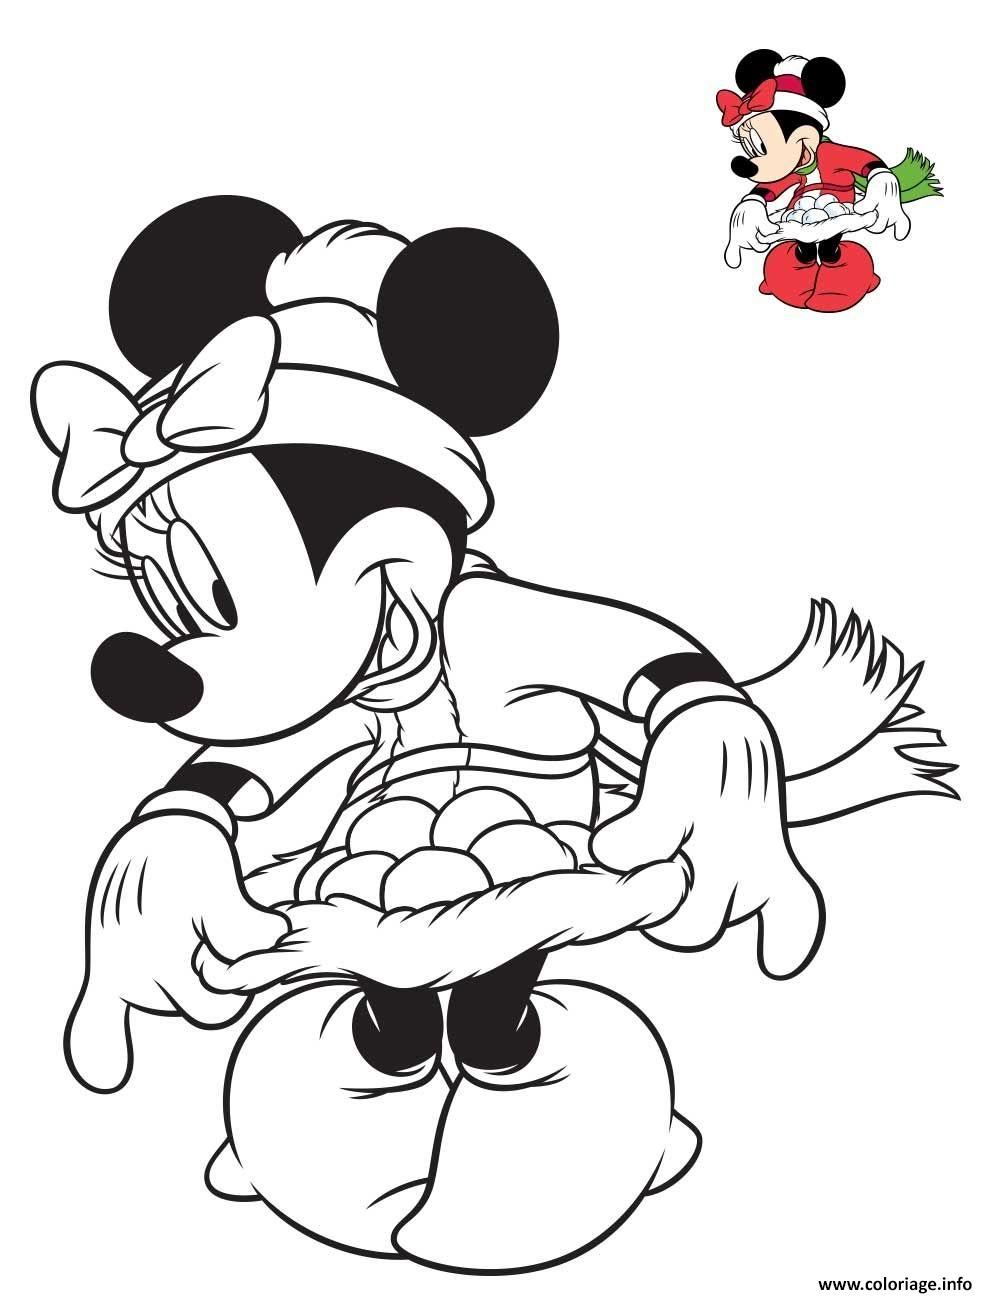 Coloriage Minnie Mouse Avec Une Jolie Robe De Noel - Jecolorie pour Coloriage Mini Mickey